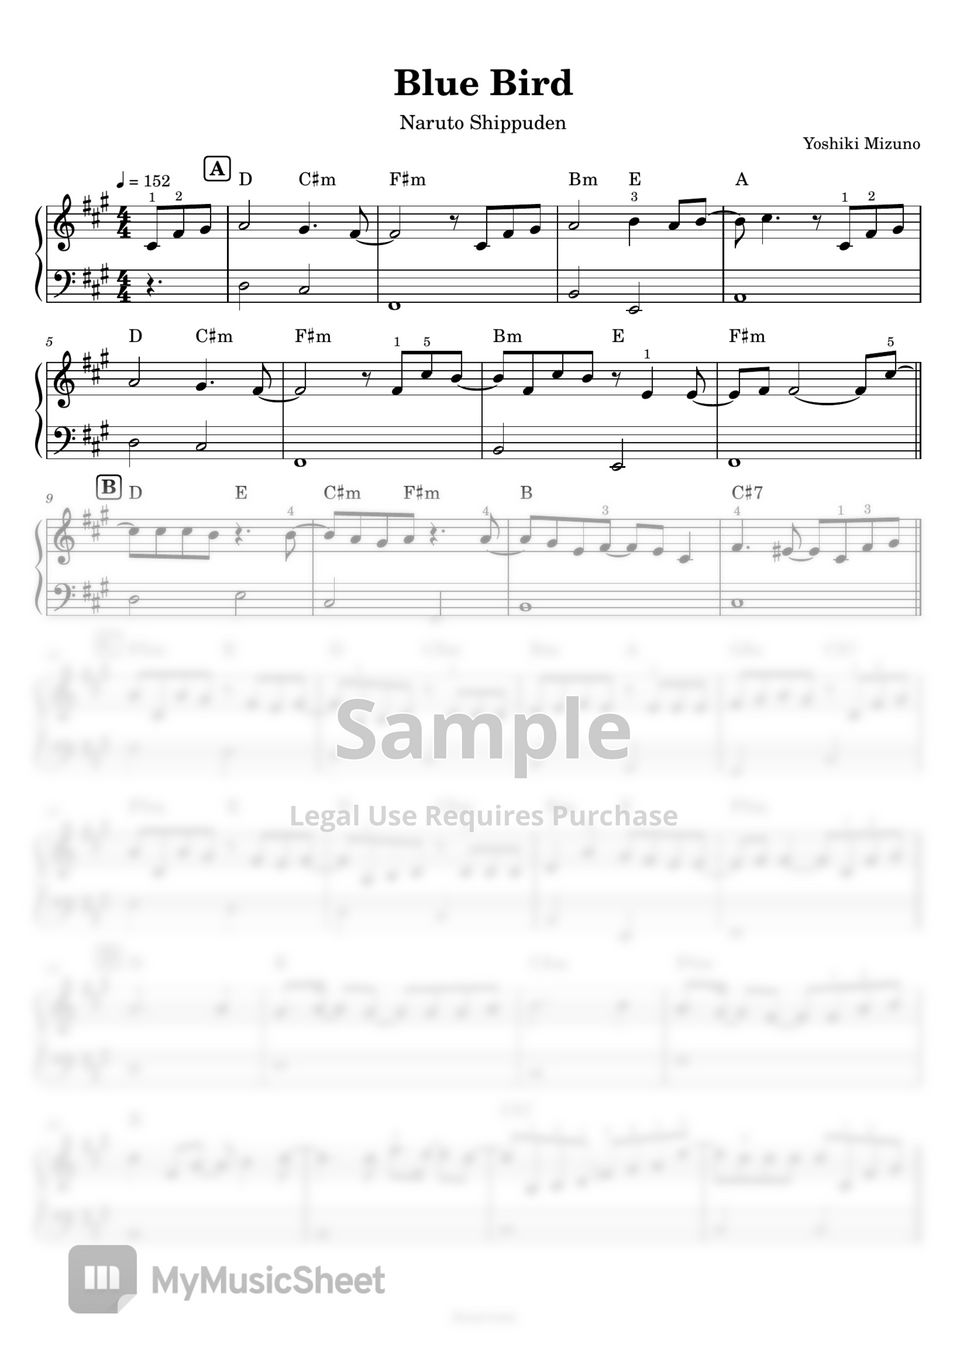 Naruto Shippuden - Blue Bird (Piano) by Anacrusa